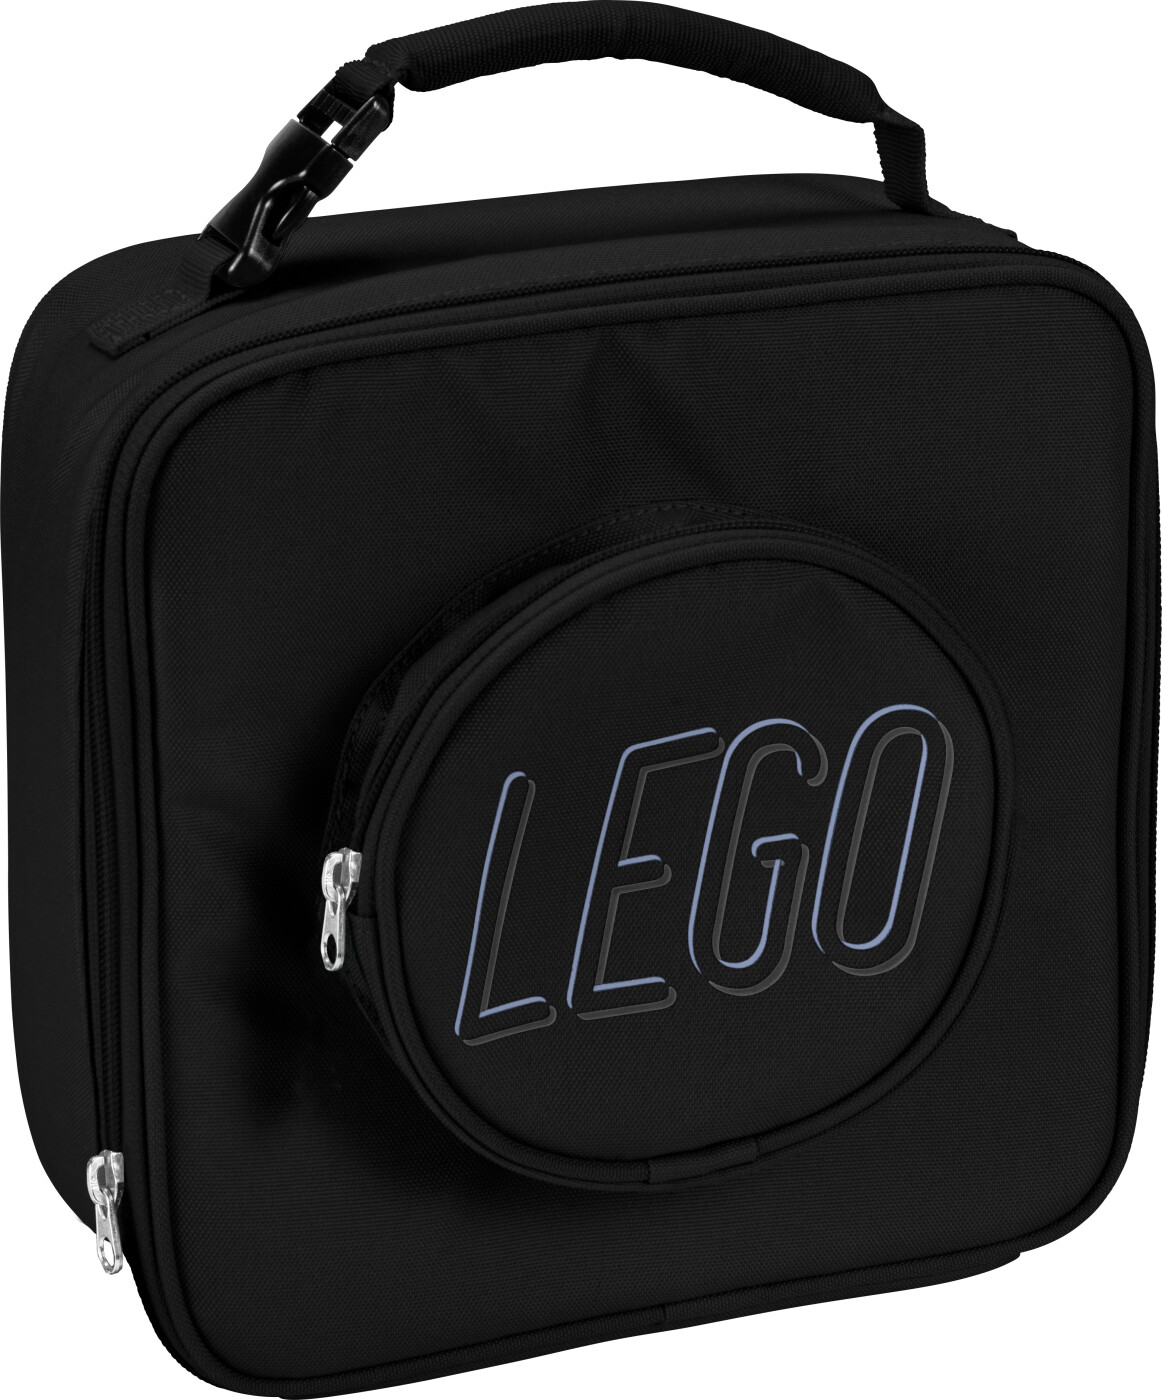 Lego - Madpakke Taske - 5 L - Sort | Se tilbud og køb på